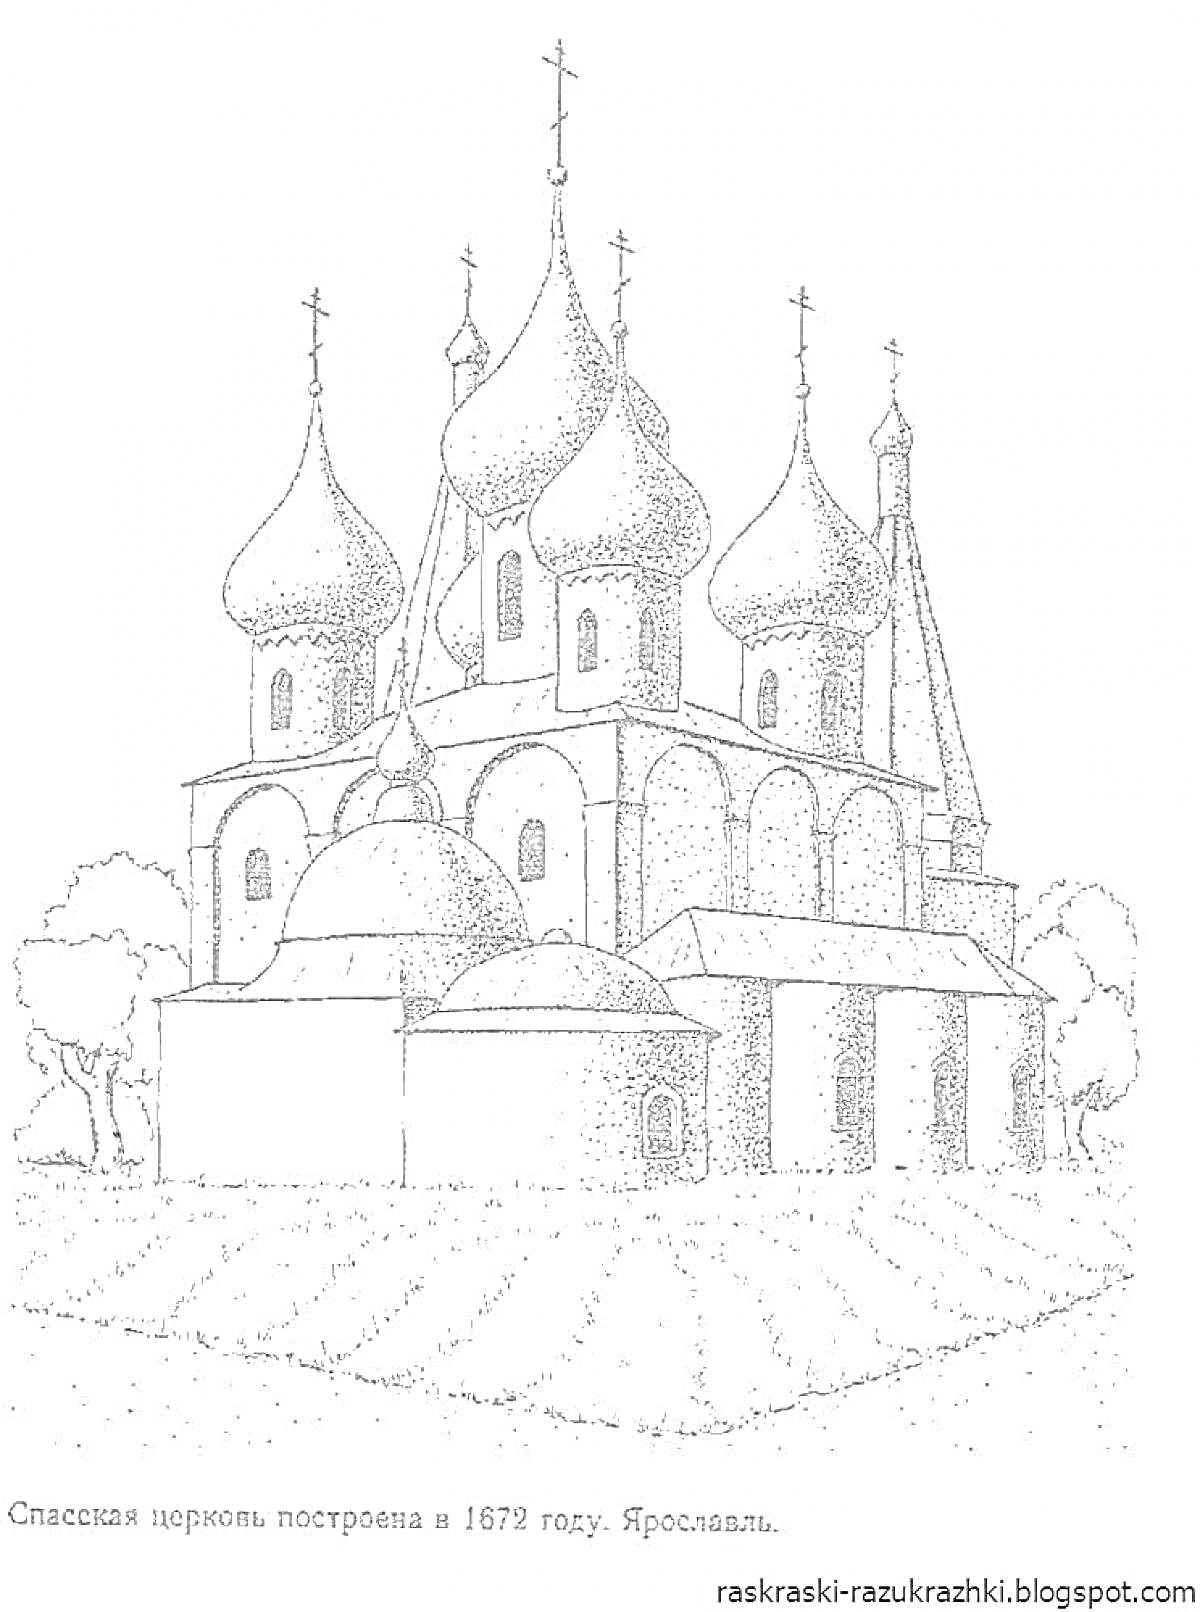 Раскраска Спасская церковь, построена в 1672 году, Ярославль. На изображении видны купола, стены, боковые пристройки, колонны, арочные окна, кресты, входная дверь, растительность вокруг церкви.